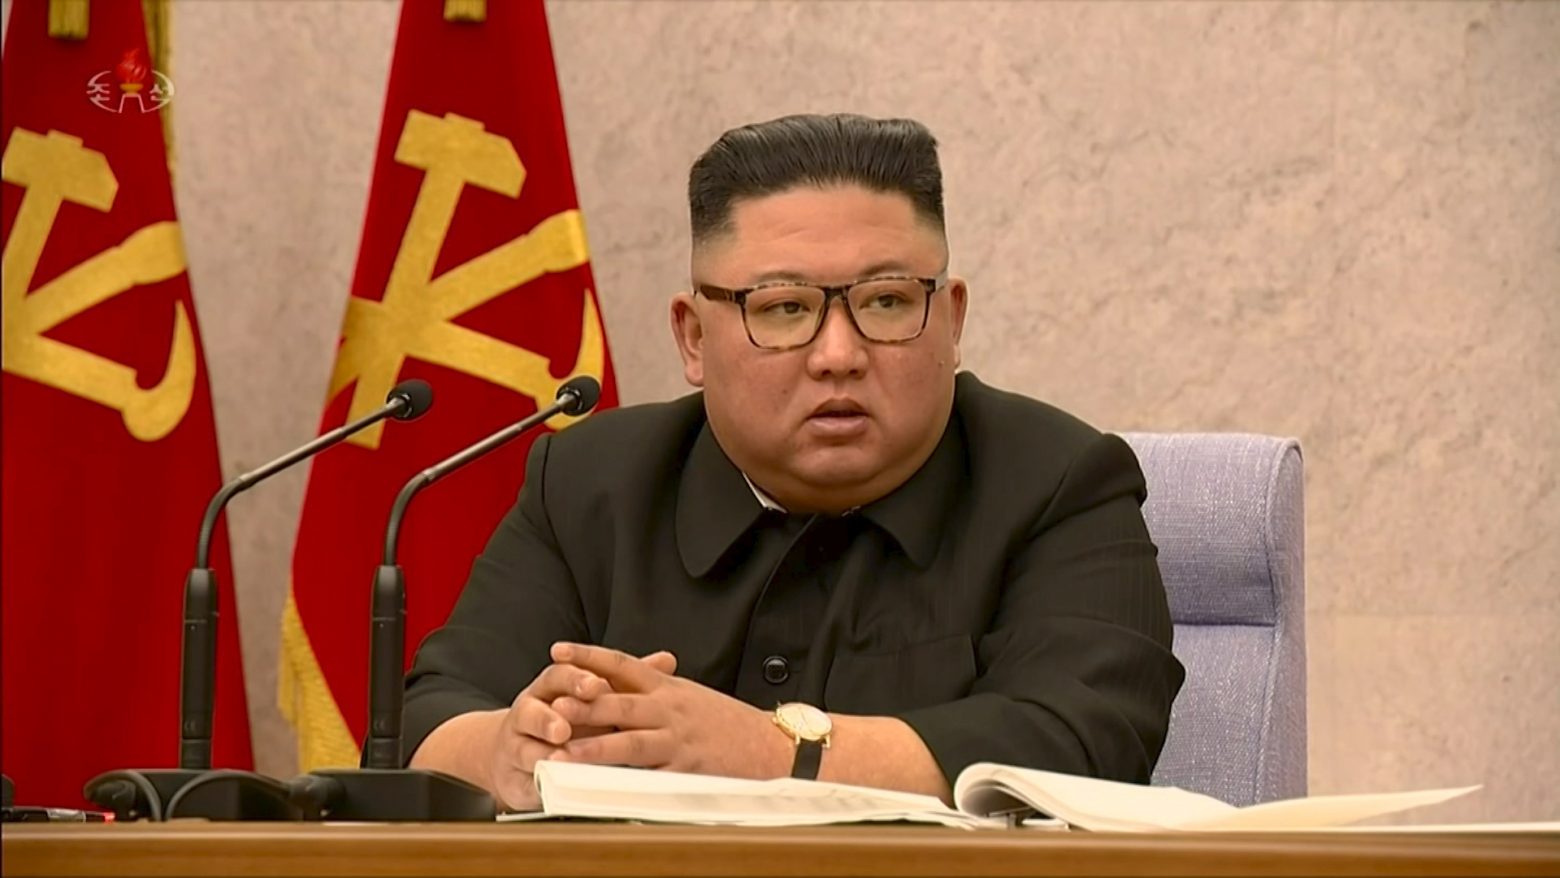 Στο έλεος της πανδημίας η Βόρεια Κορέα; Μυστηριώδης δήλωση του Κιμ για «μείζονα κρίση»